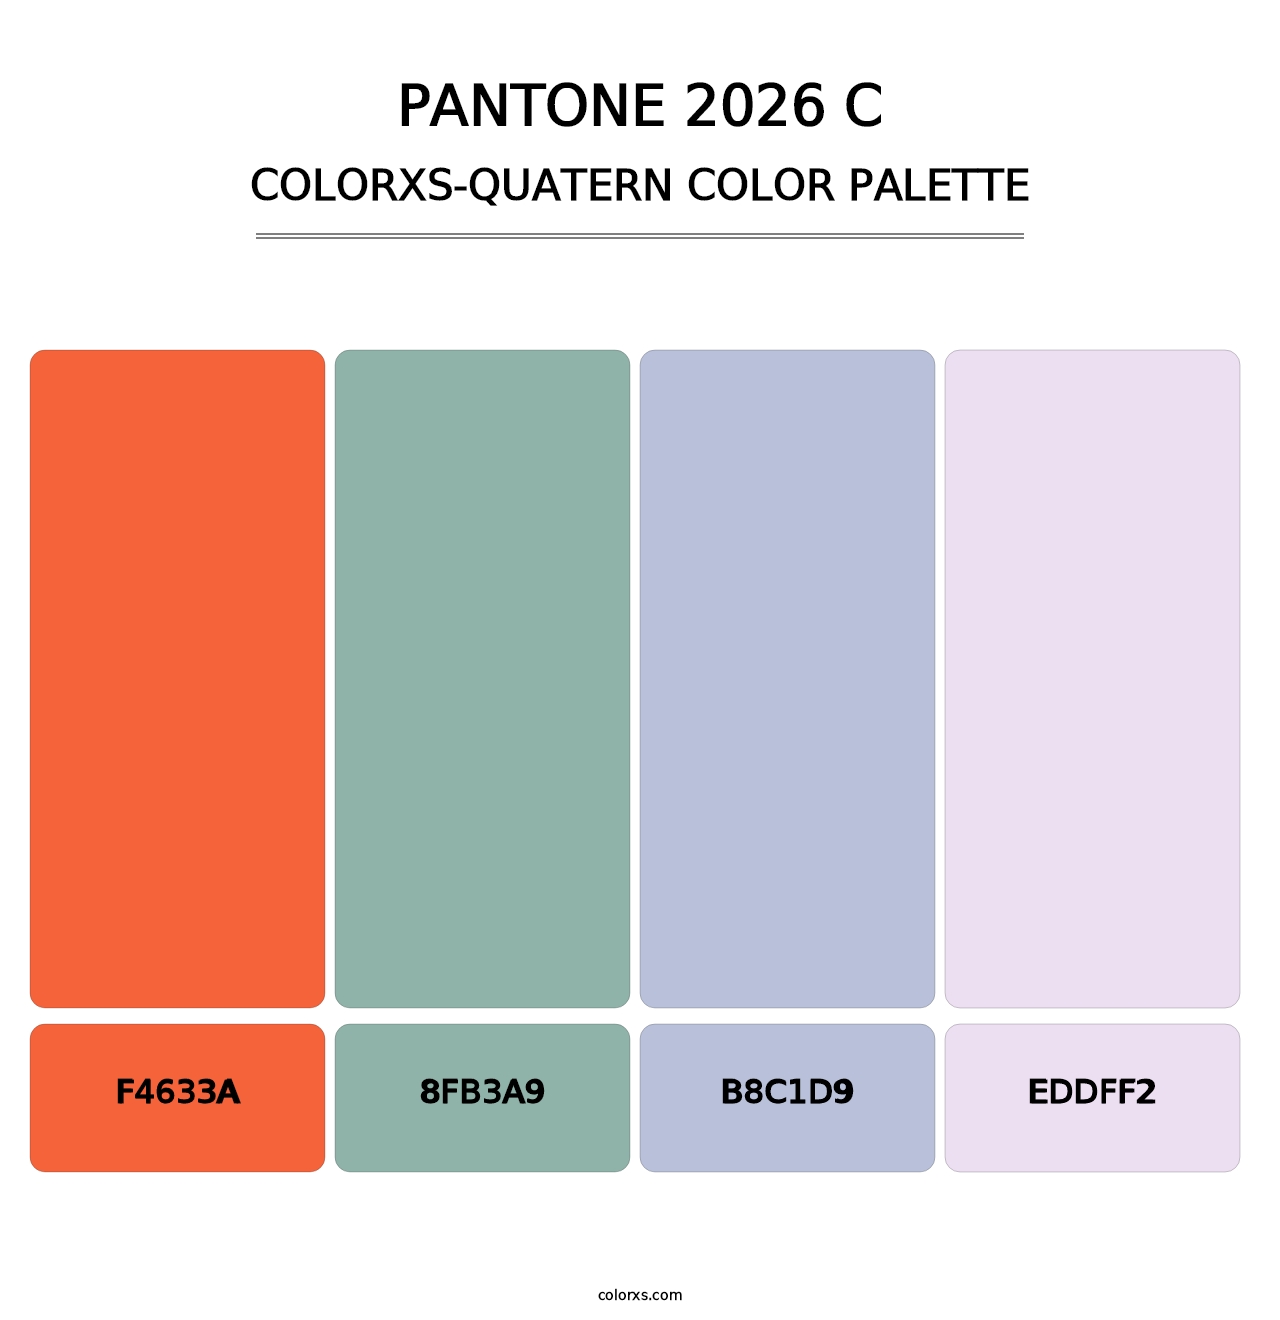 PANTONE 2026 C - Colorxs Quatern Palette